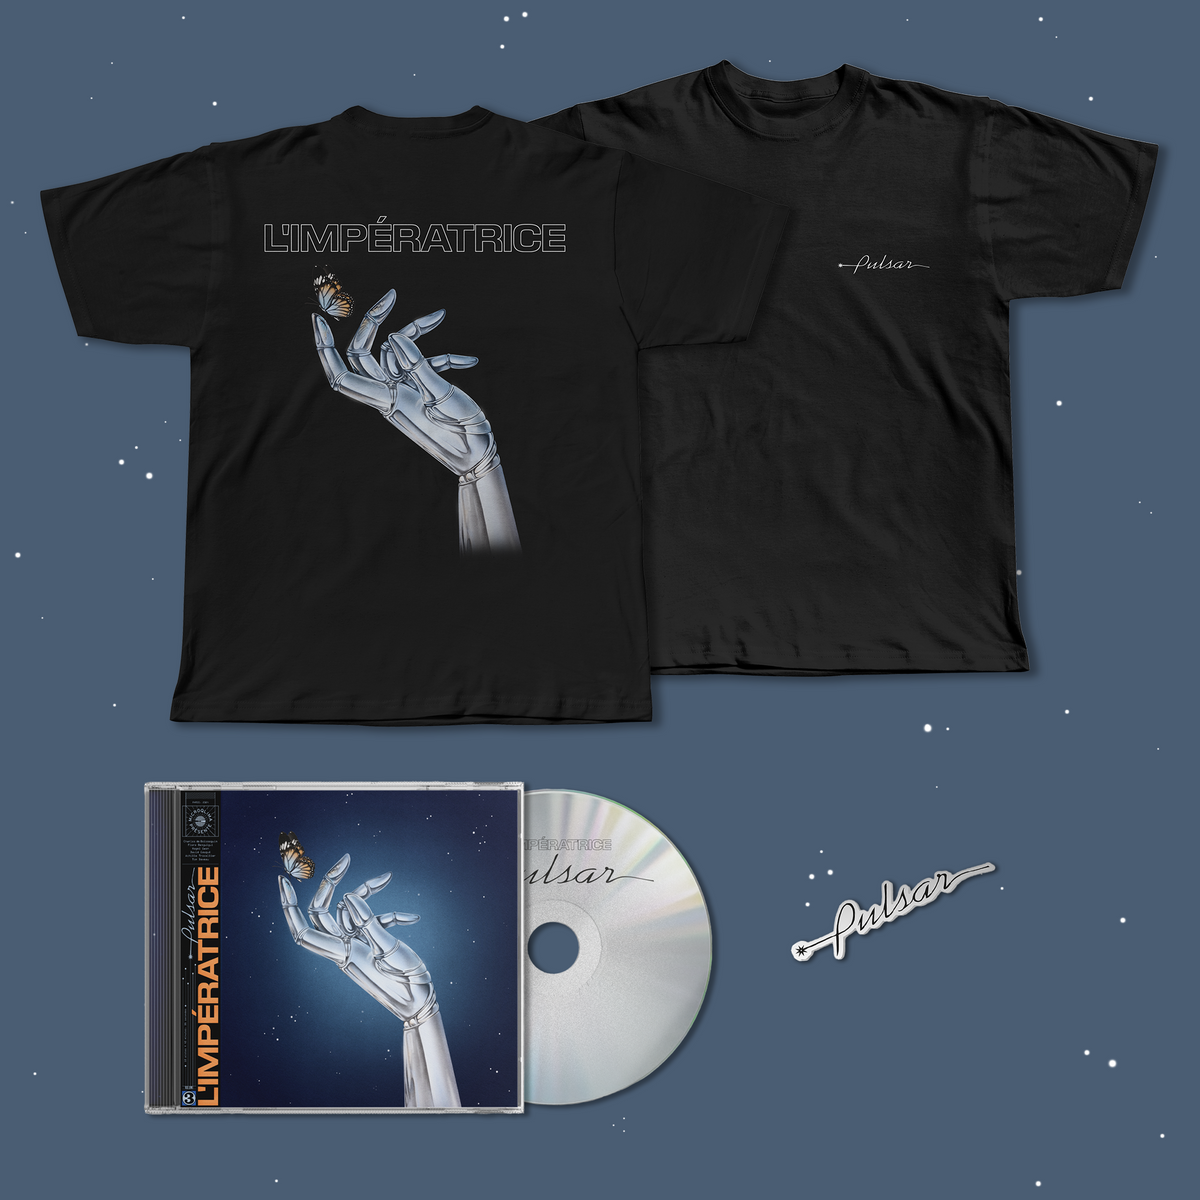 PACK CD "Pulsar" + T-Shirt + Sticker